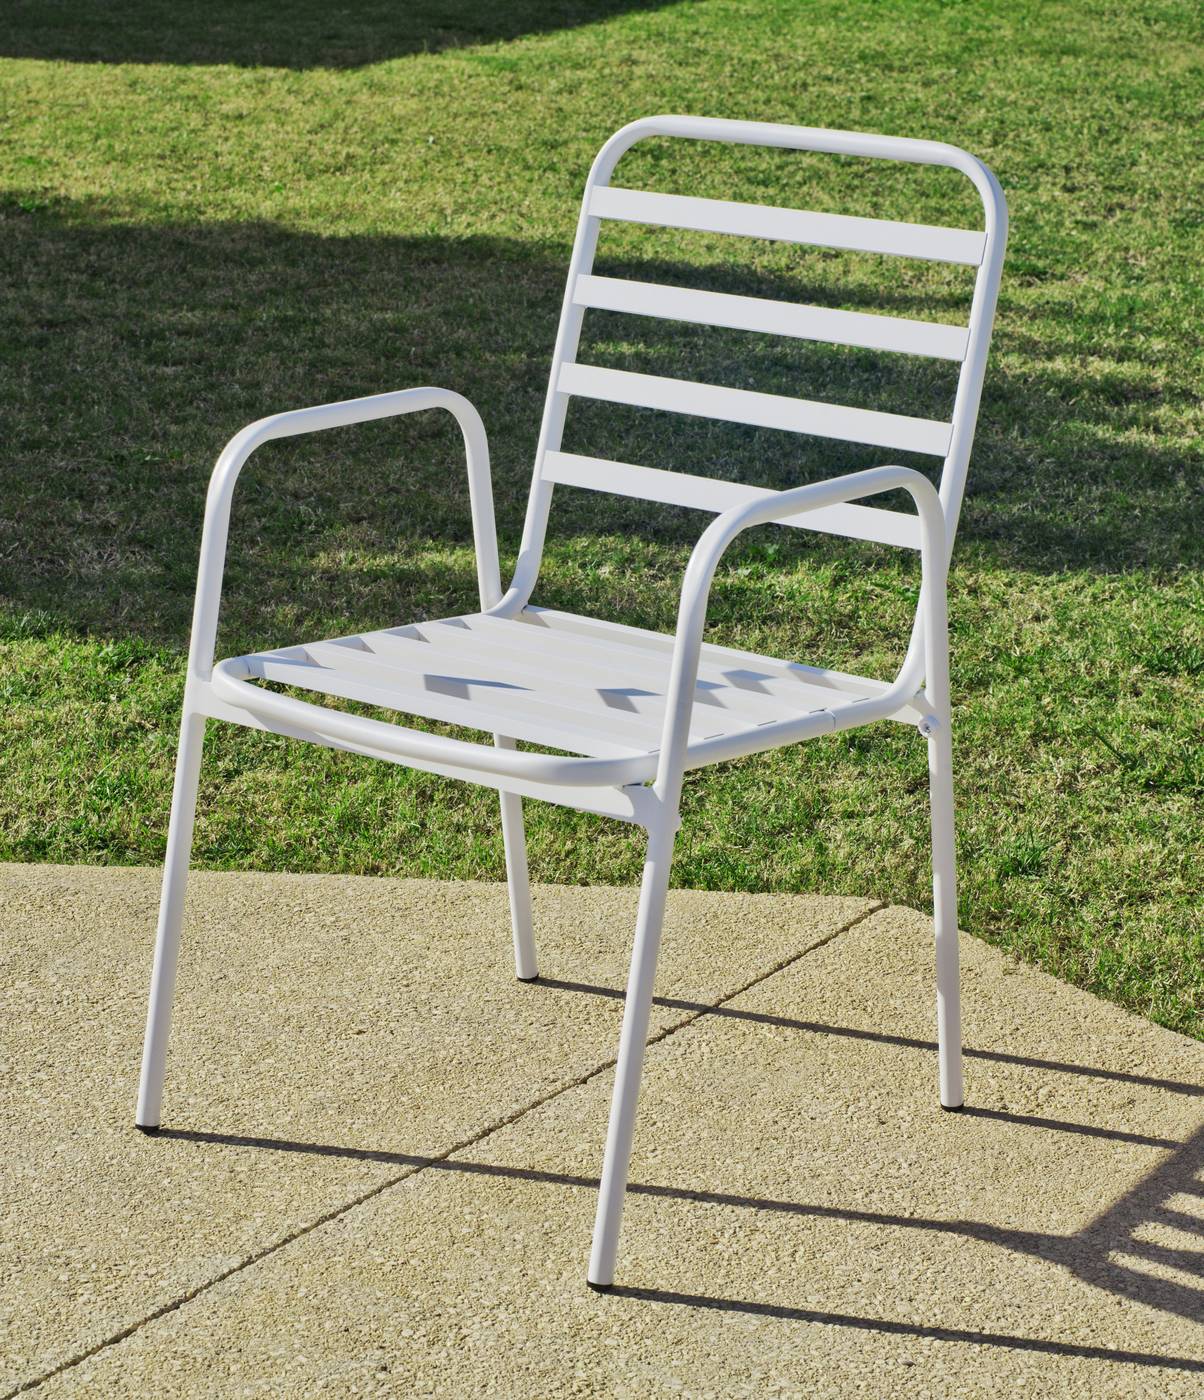 Set Aluminio Margot-Maxim 120-4 - Conjunto aluminio de color blanco: mesa rectangular 120 cm. con tablero de heverzaplus y 4 sillones apilables de aluminio